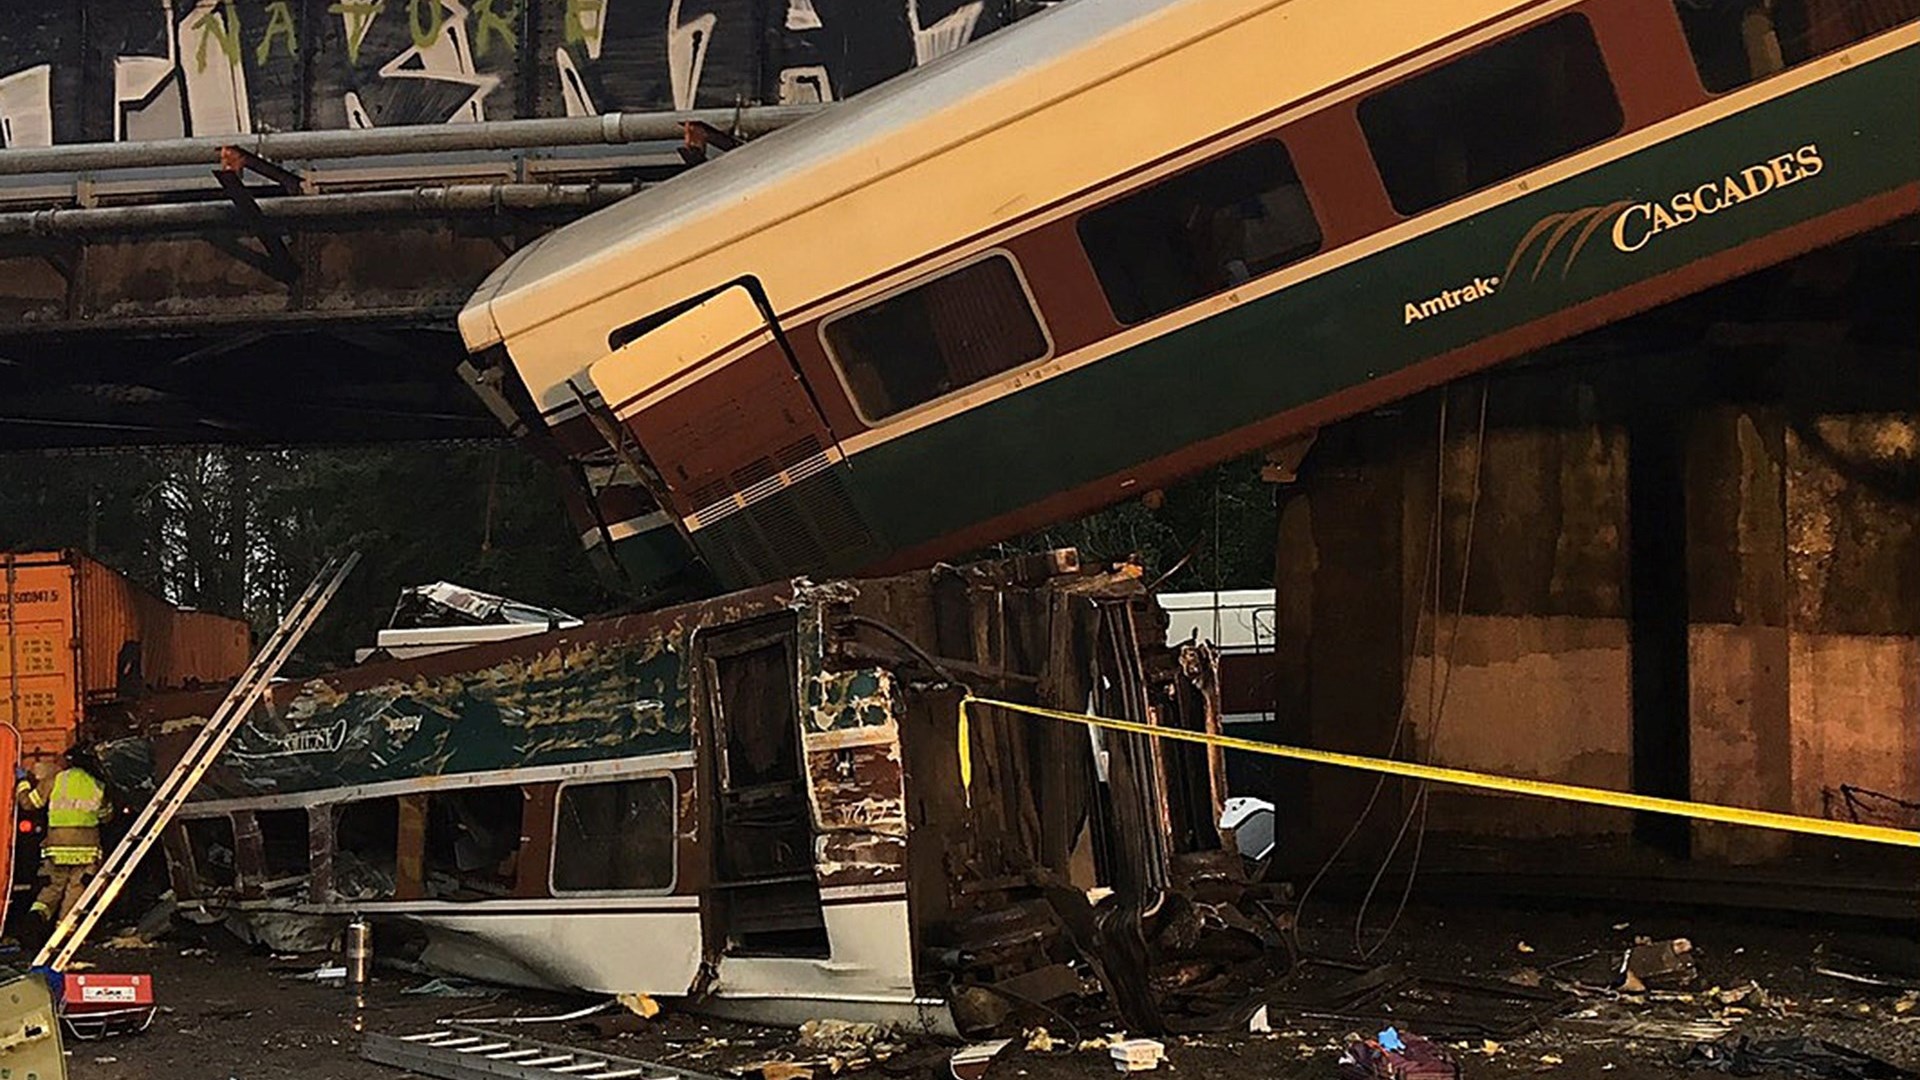 Τρεις οι νεκροί από το σιδηροδρομικό δυστύχημα στην Ουάσινγκτον